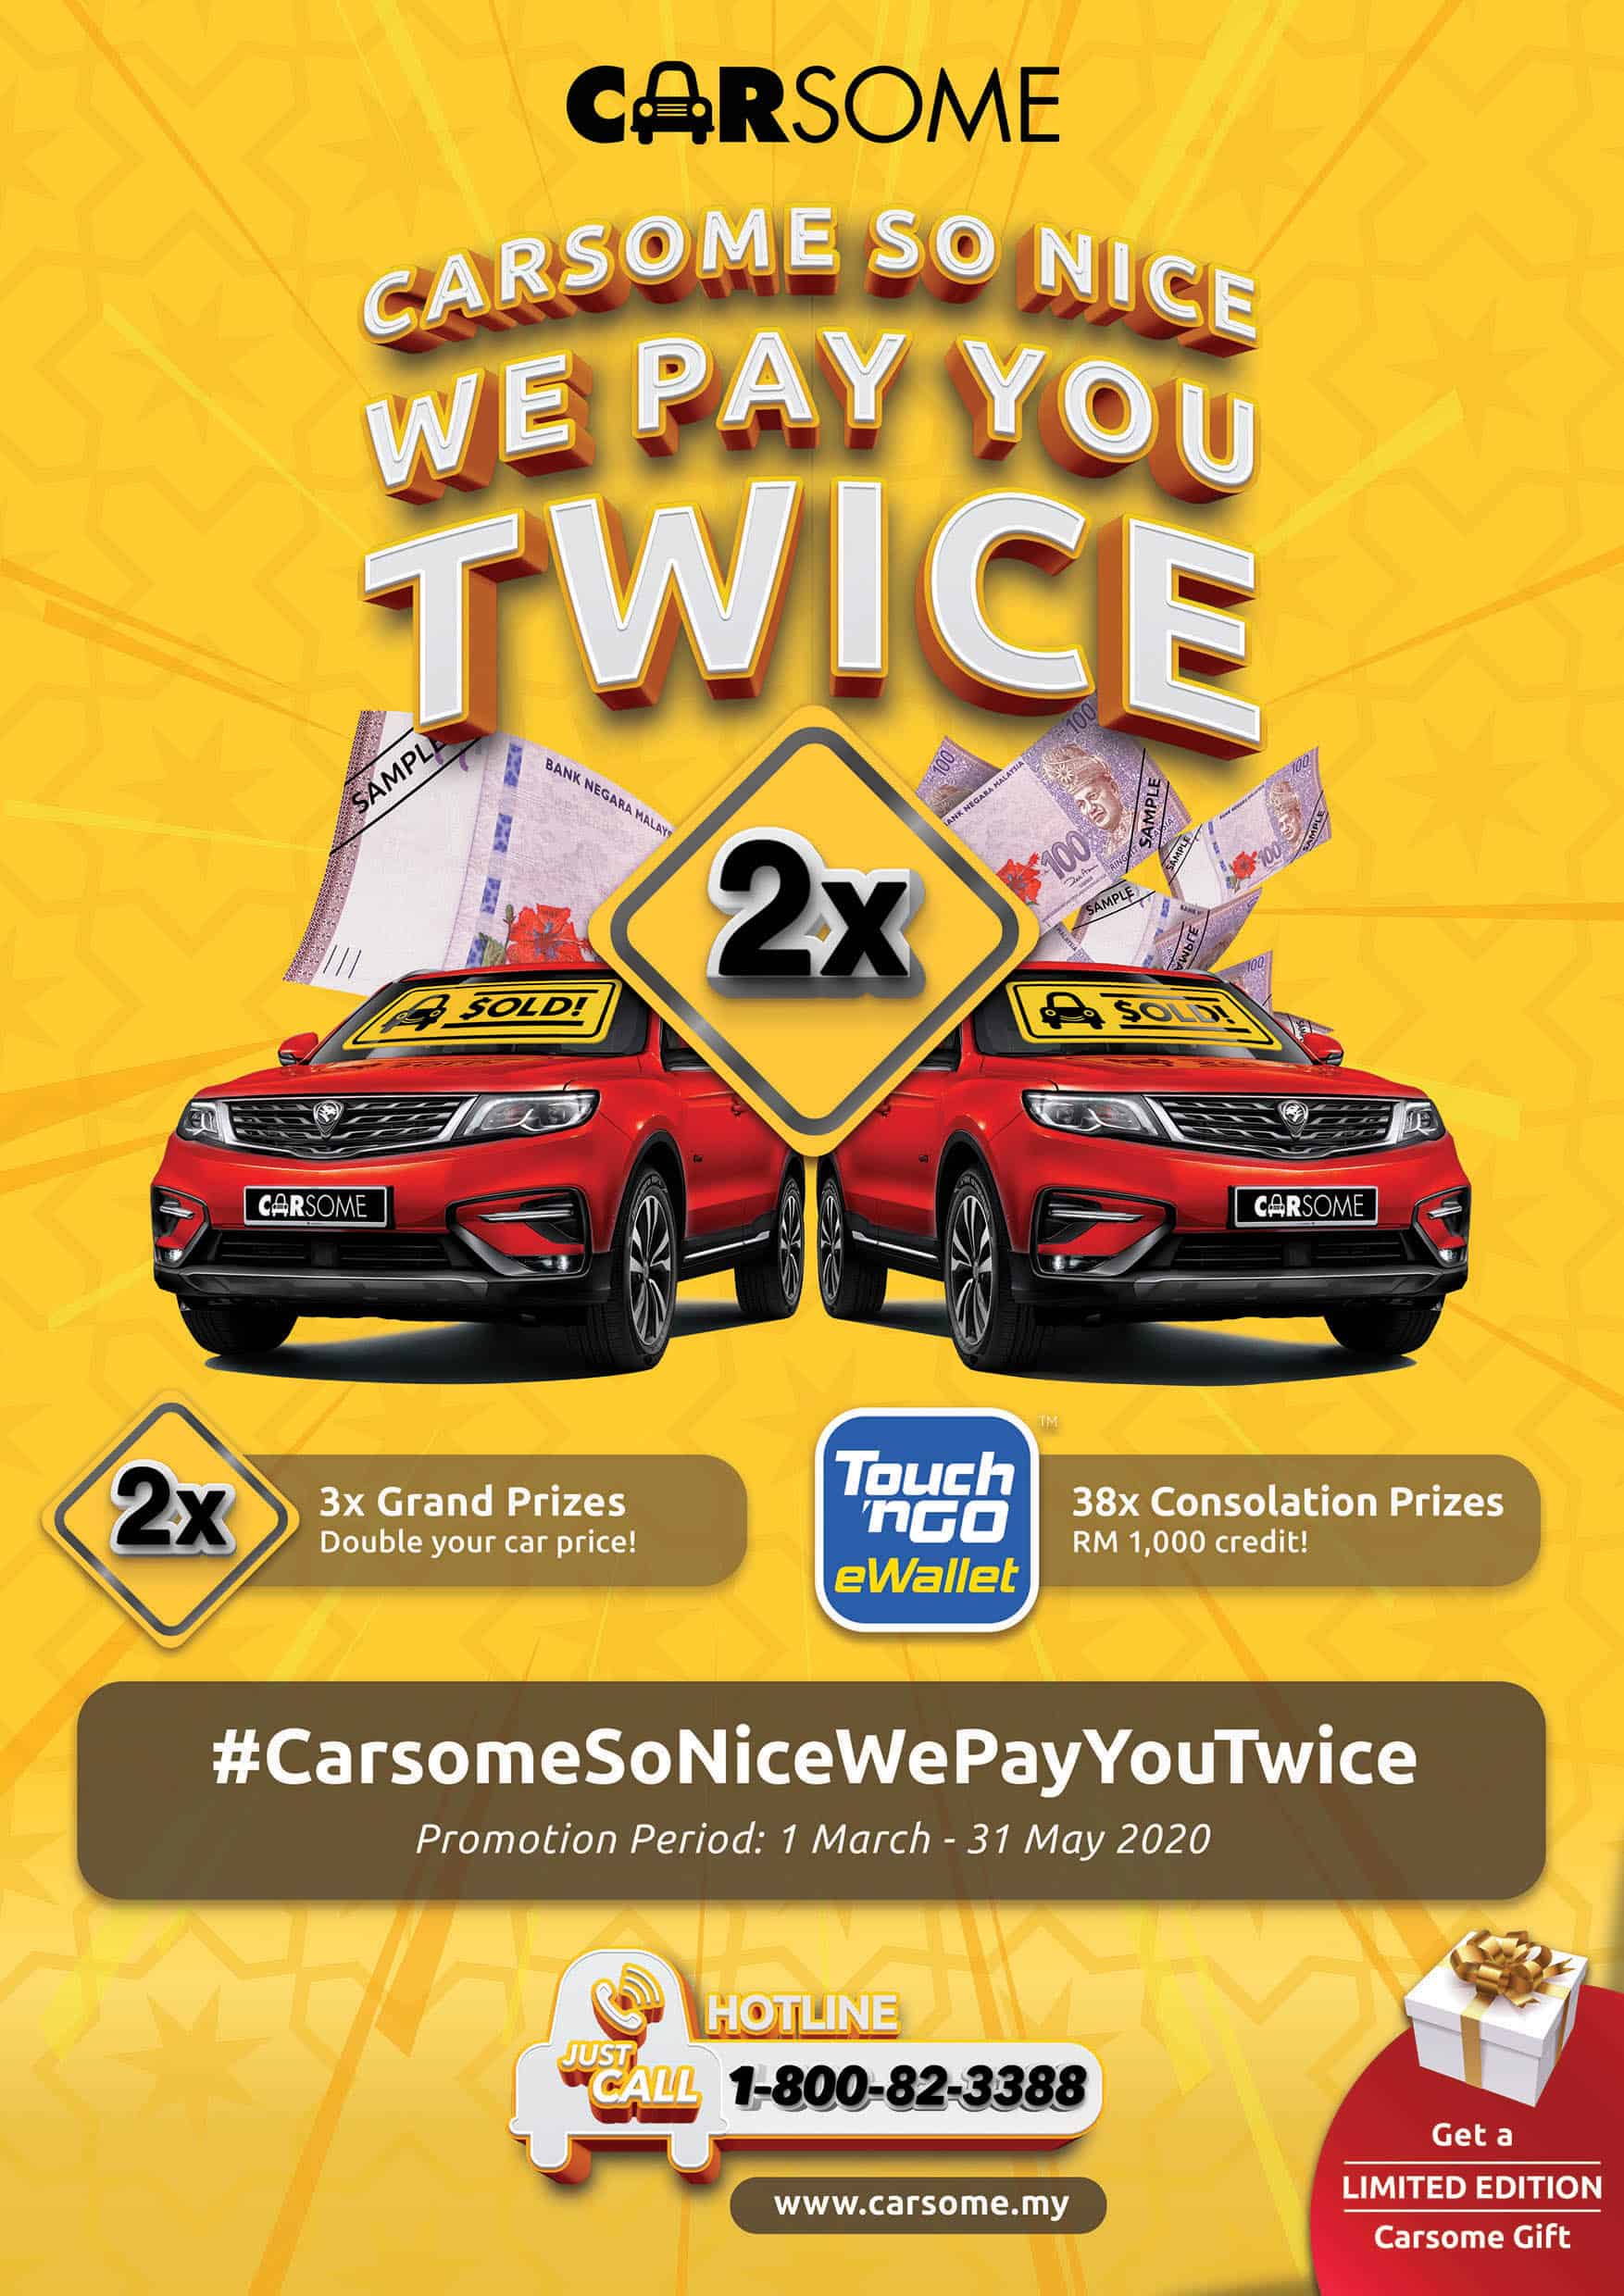 Berita Baik untuk Semua Pemilik Kereta di Malaysia! Carsome Memberikan Anda Peluang Untuk Gandakan Harga Kereta Anda dengan Promosi #BaikGilerCarsomeBayar2Kali (#CarsomeSoNiceWePayYouTwice) – di Seluruh Negara